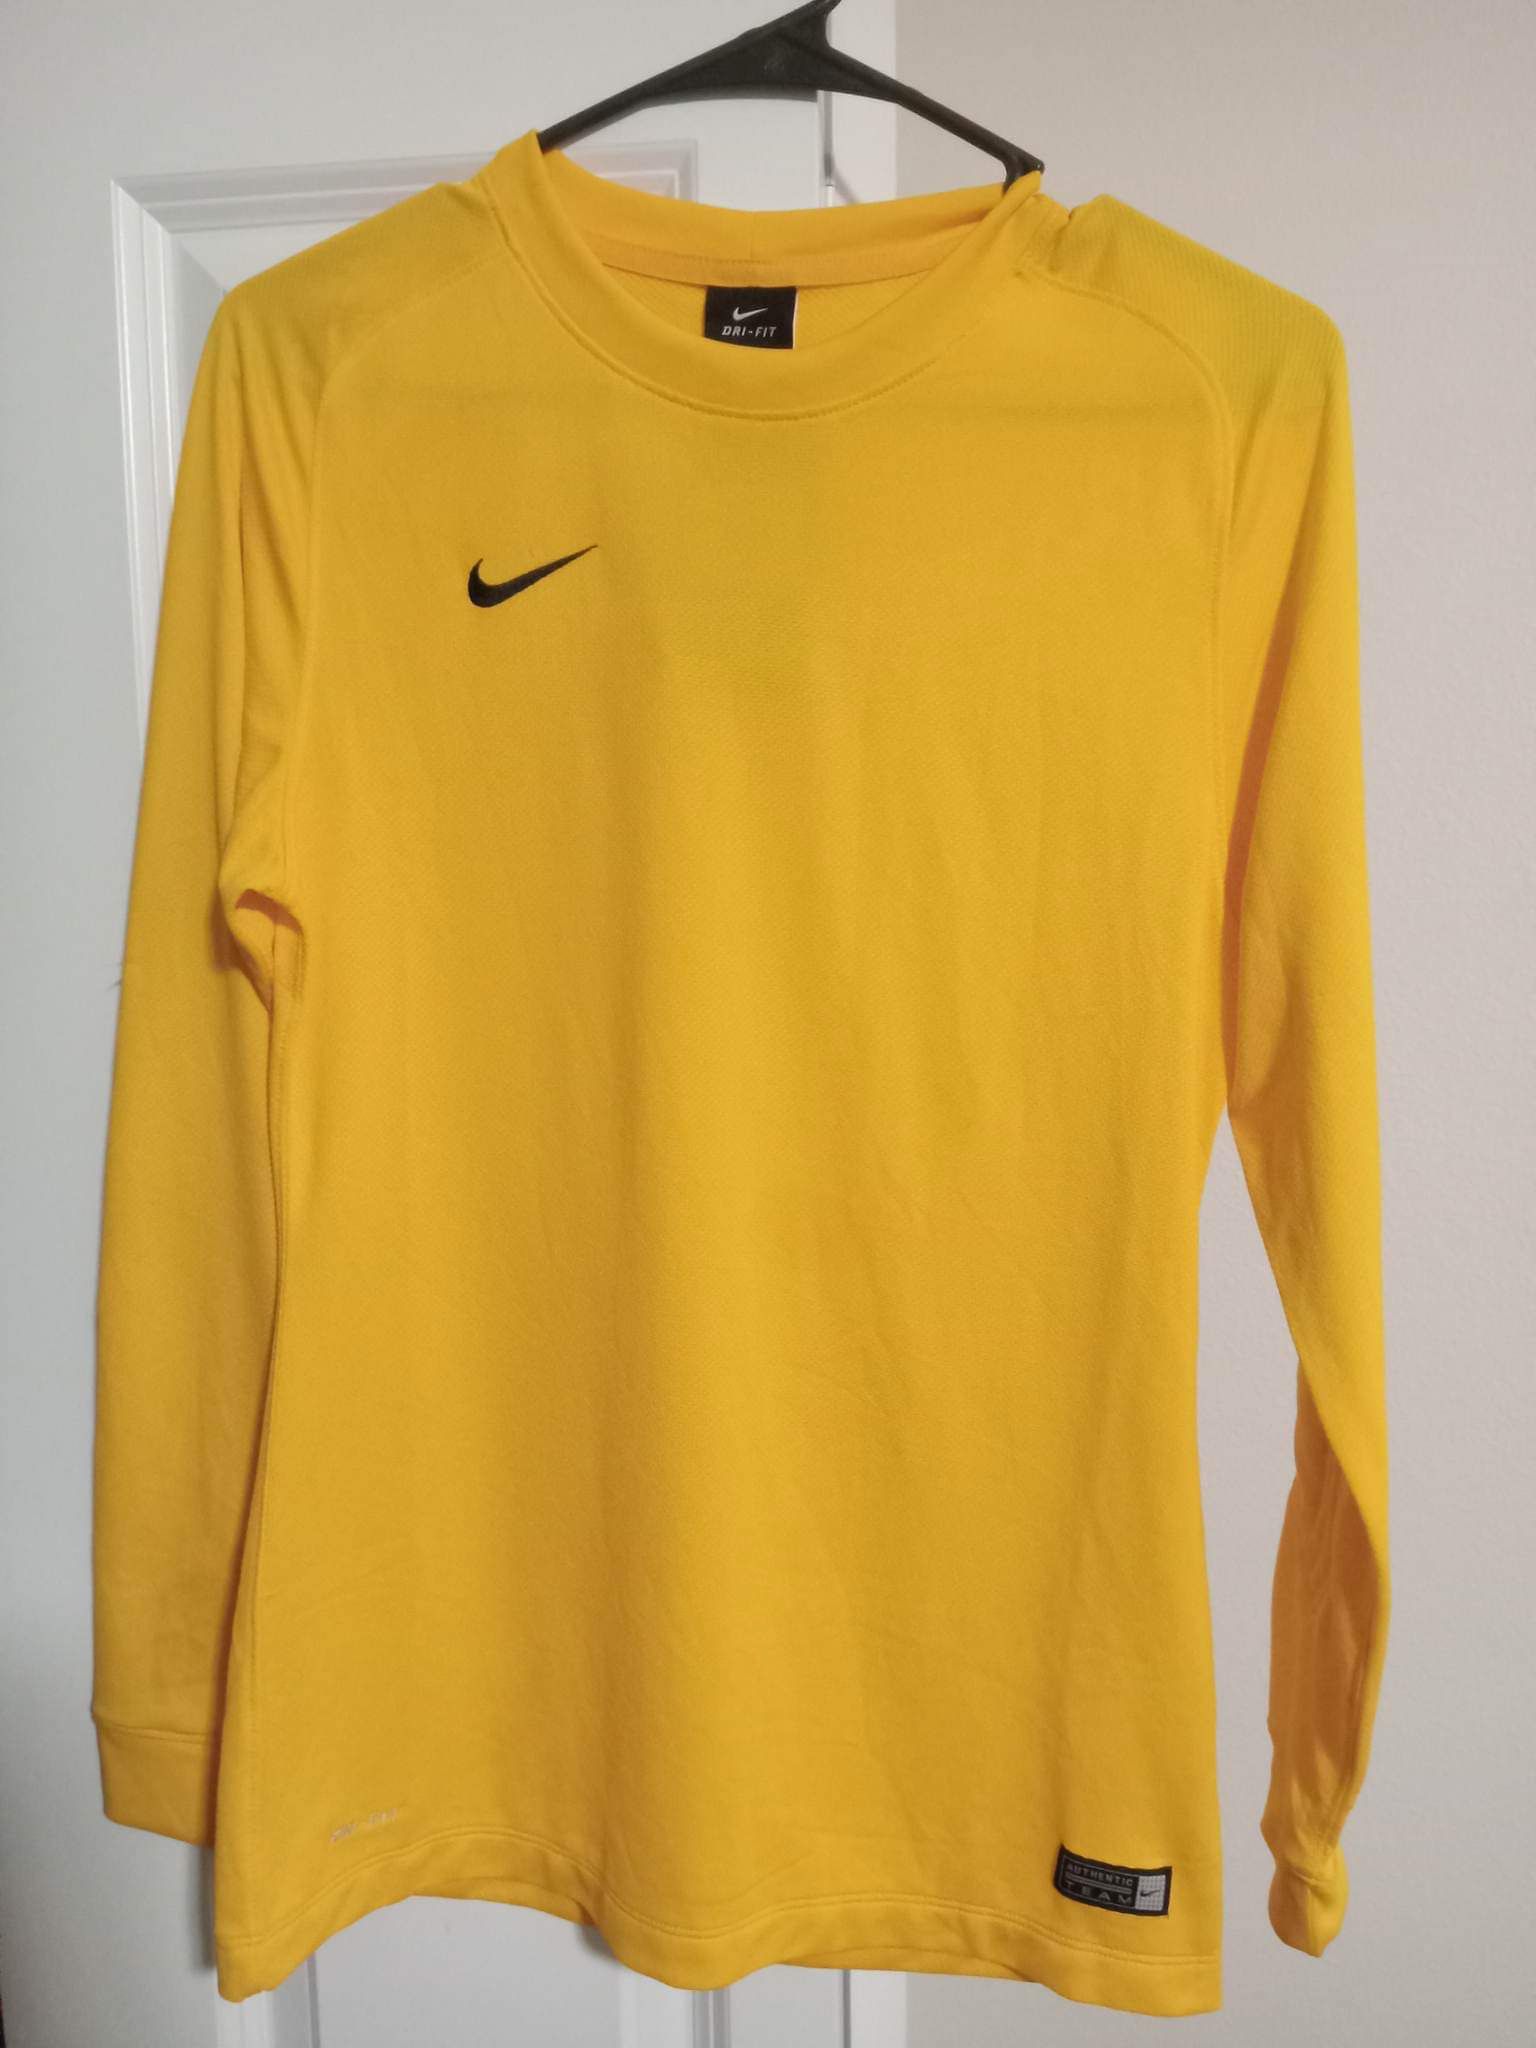 Women’s Yellow Nike Shirt 